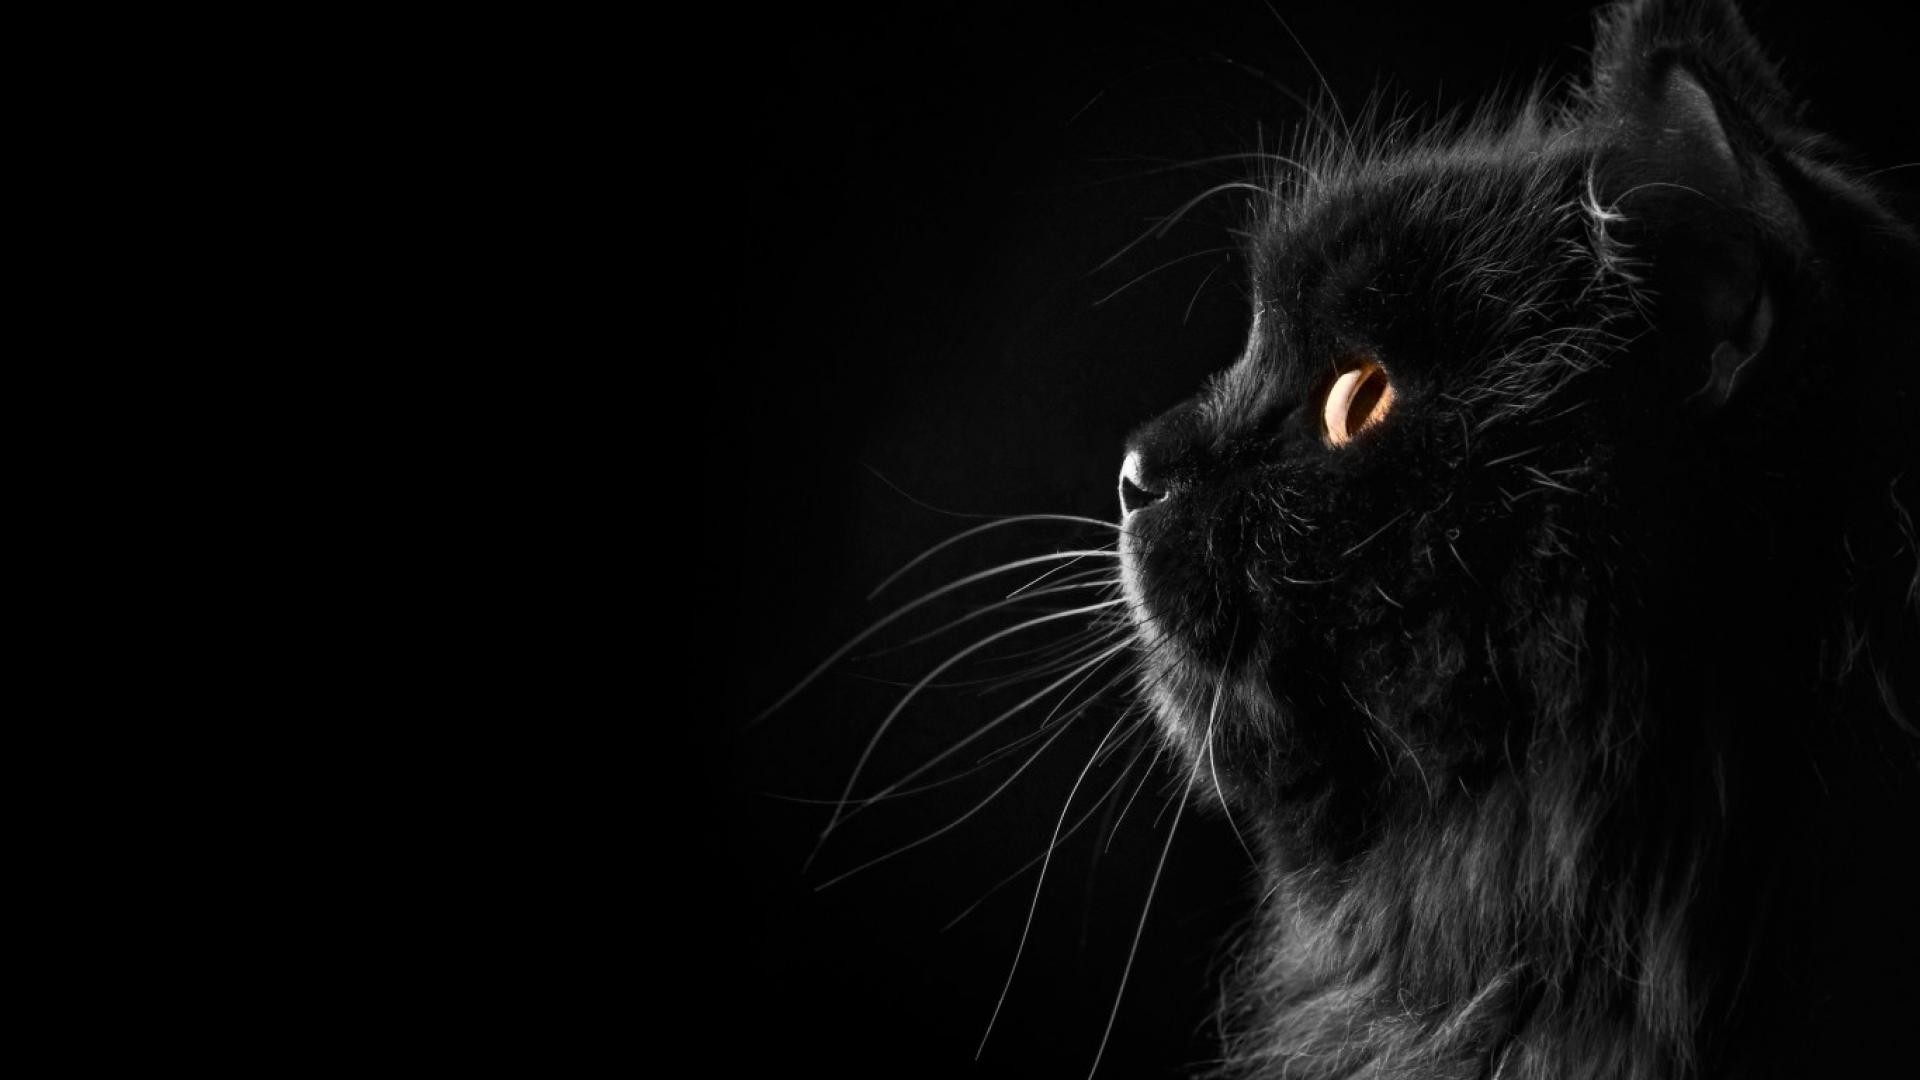 Mèo đen (Black Cat) - Hôm nay, chúng ta hãy cùng chiêm ngưỡng hình ảnh của một chú mèo đen thông minh và dễ thương. Với bộ lông đen lấp lánh, đôi mắt toát lên vẻ ma mị, hình ảnh chính là lý do tại sao mèo đen luôn được yêu thích và quan tâm đặc biệt.